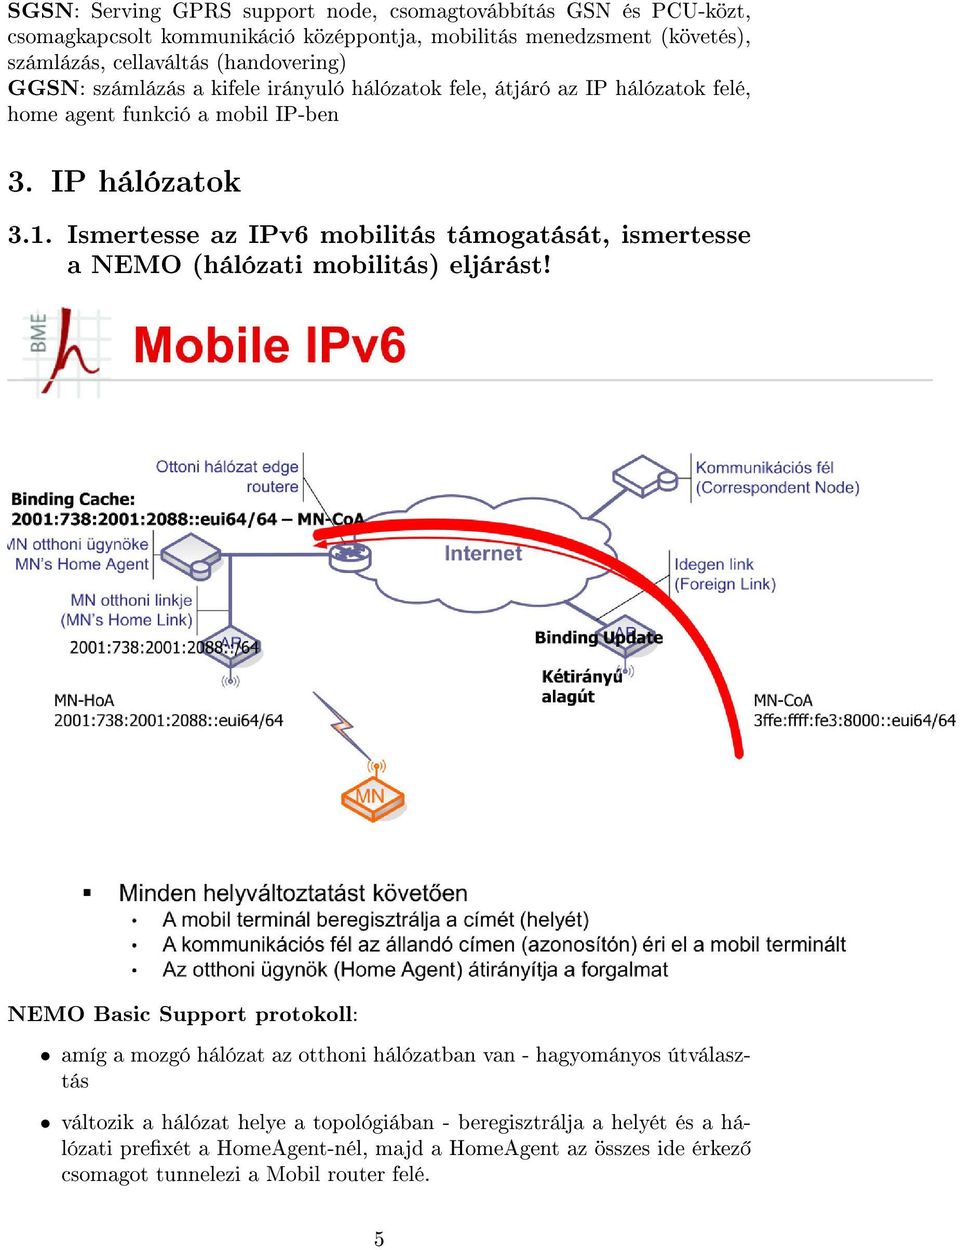 Ismertesse az IPv6 mobilitás támogatását, ismertesse a NEMO (hálózati mobilitás) eljárást!